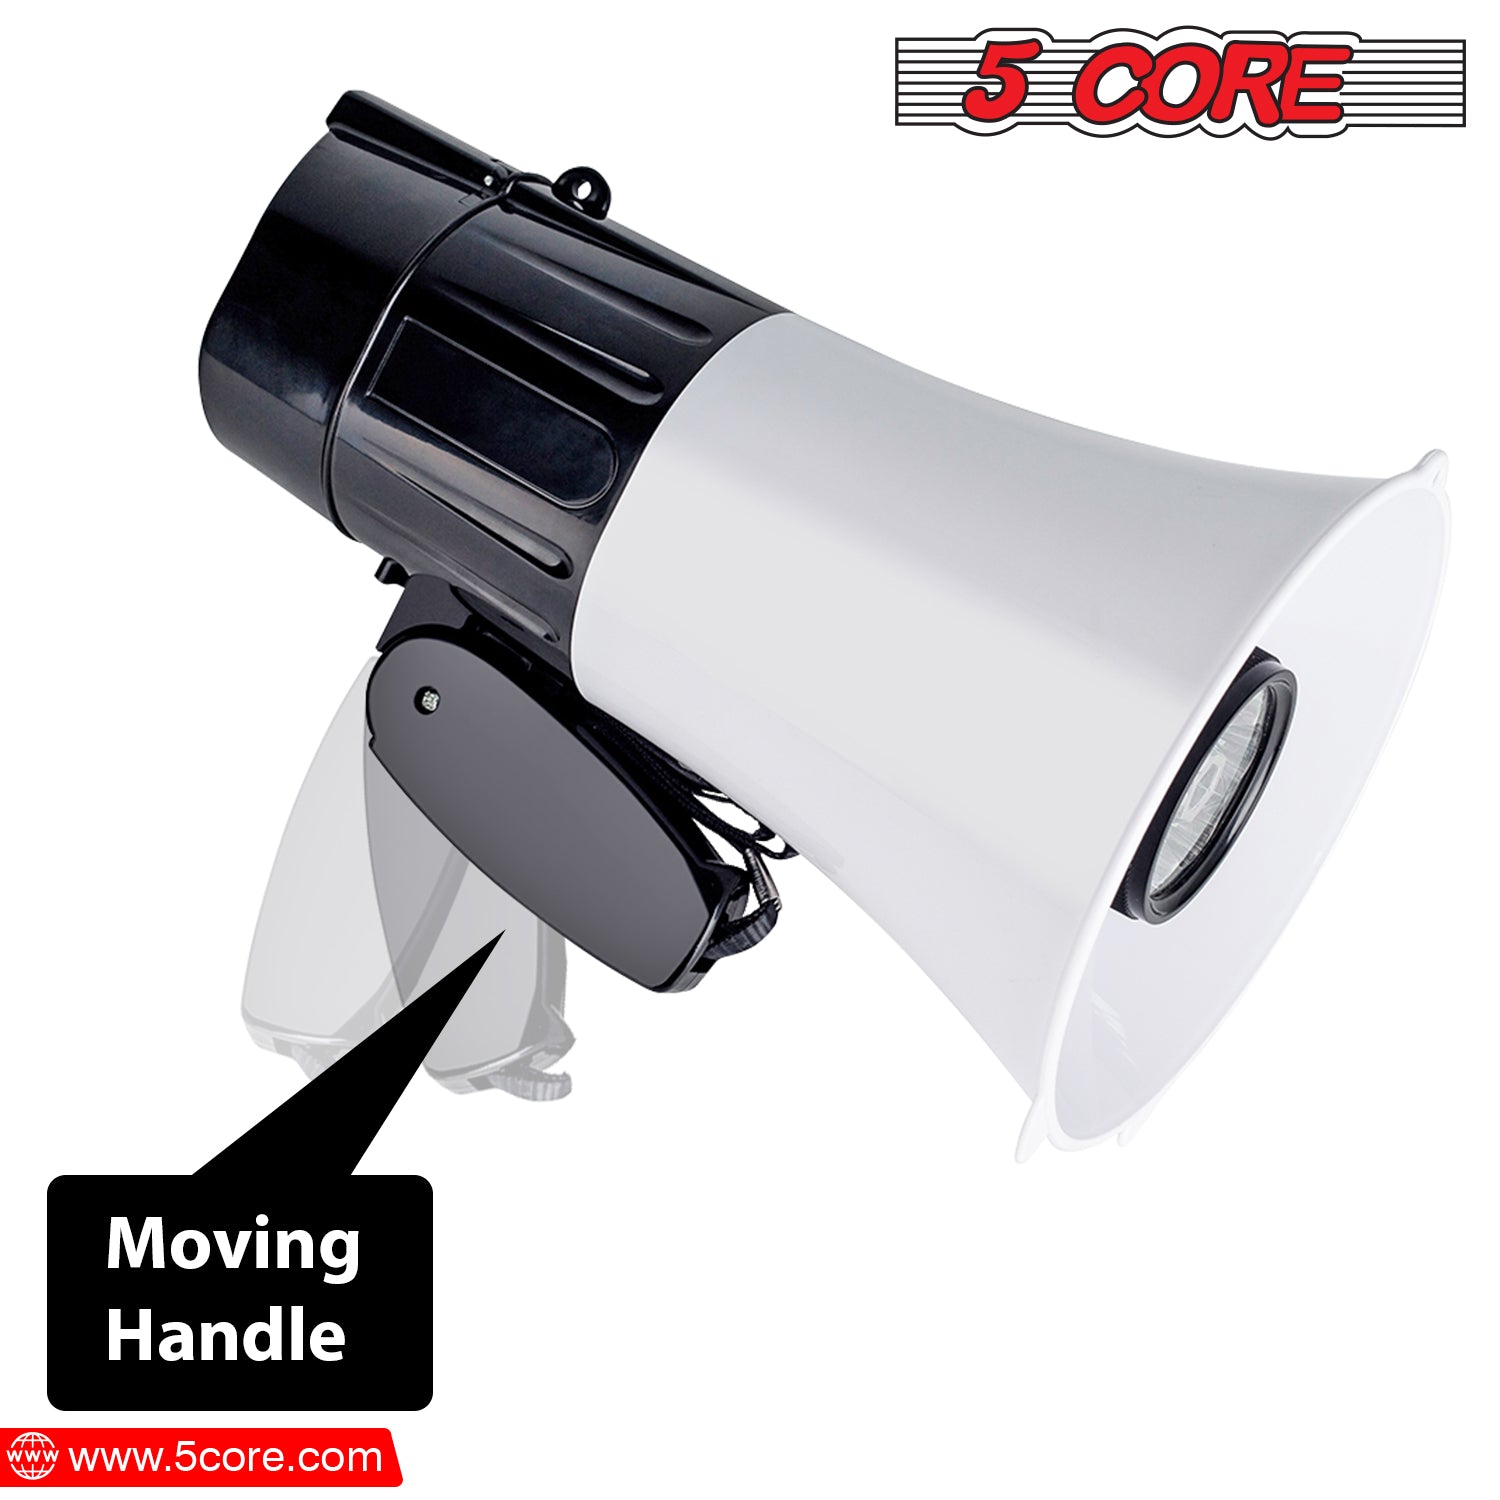 Moving handle megaphone